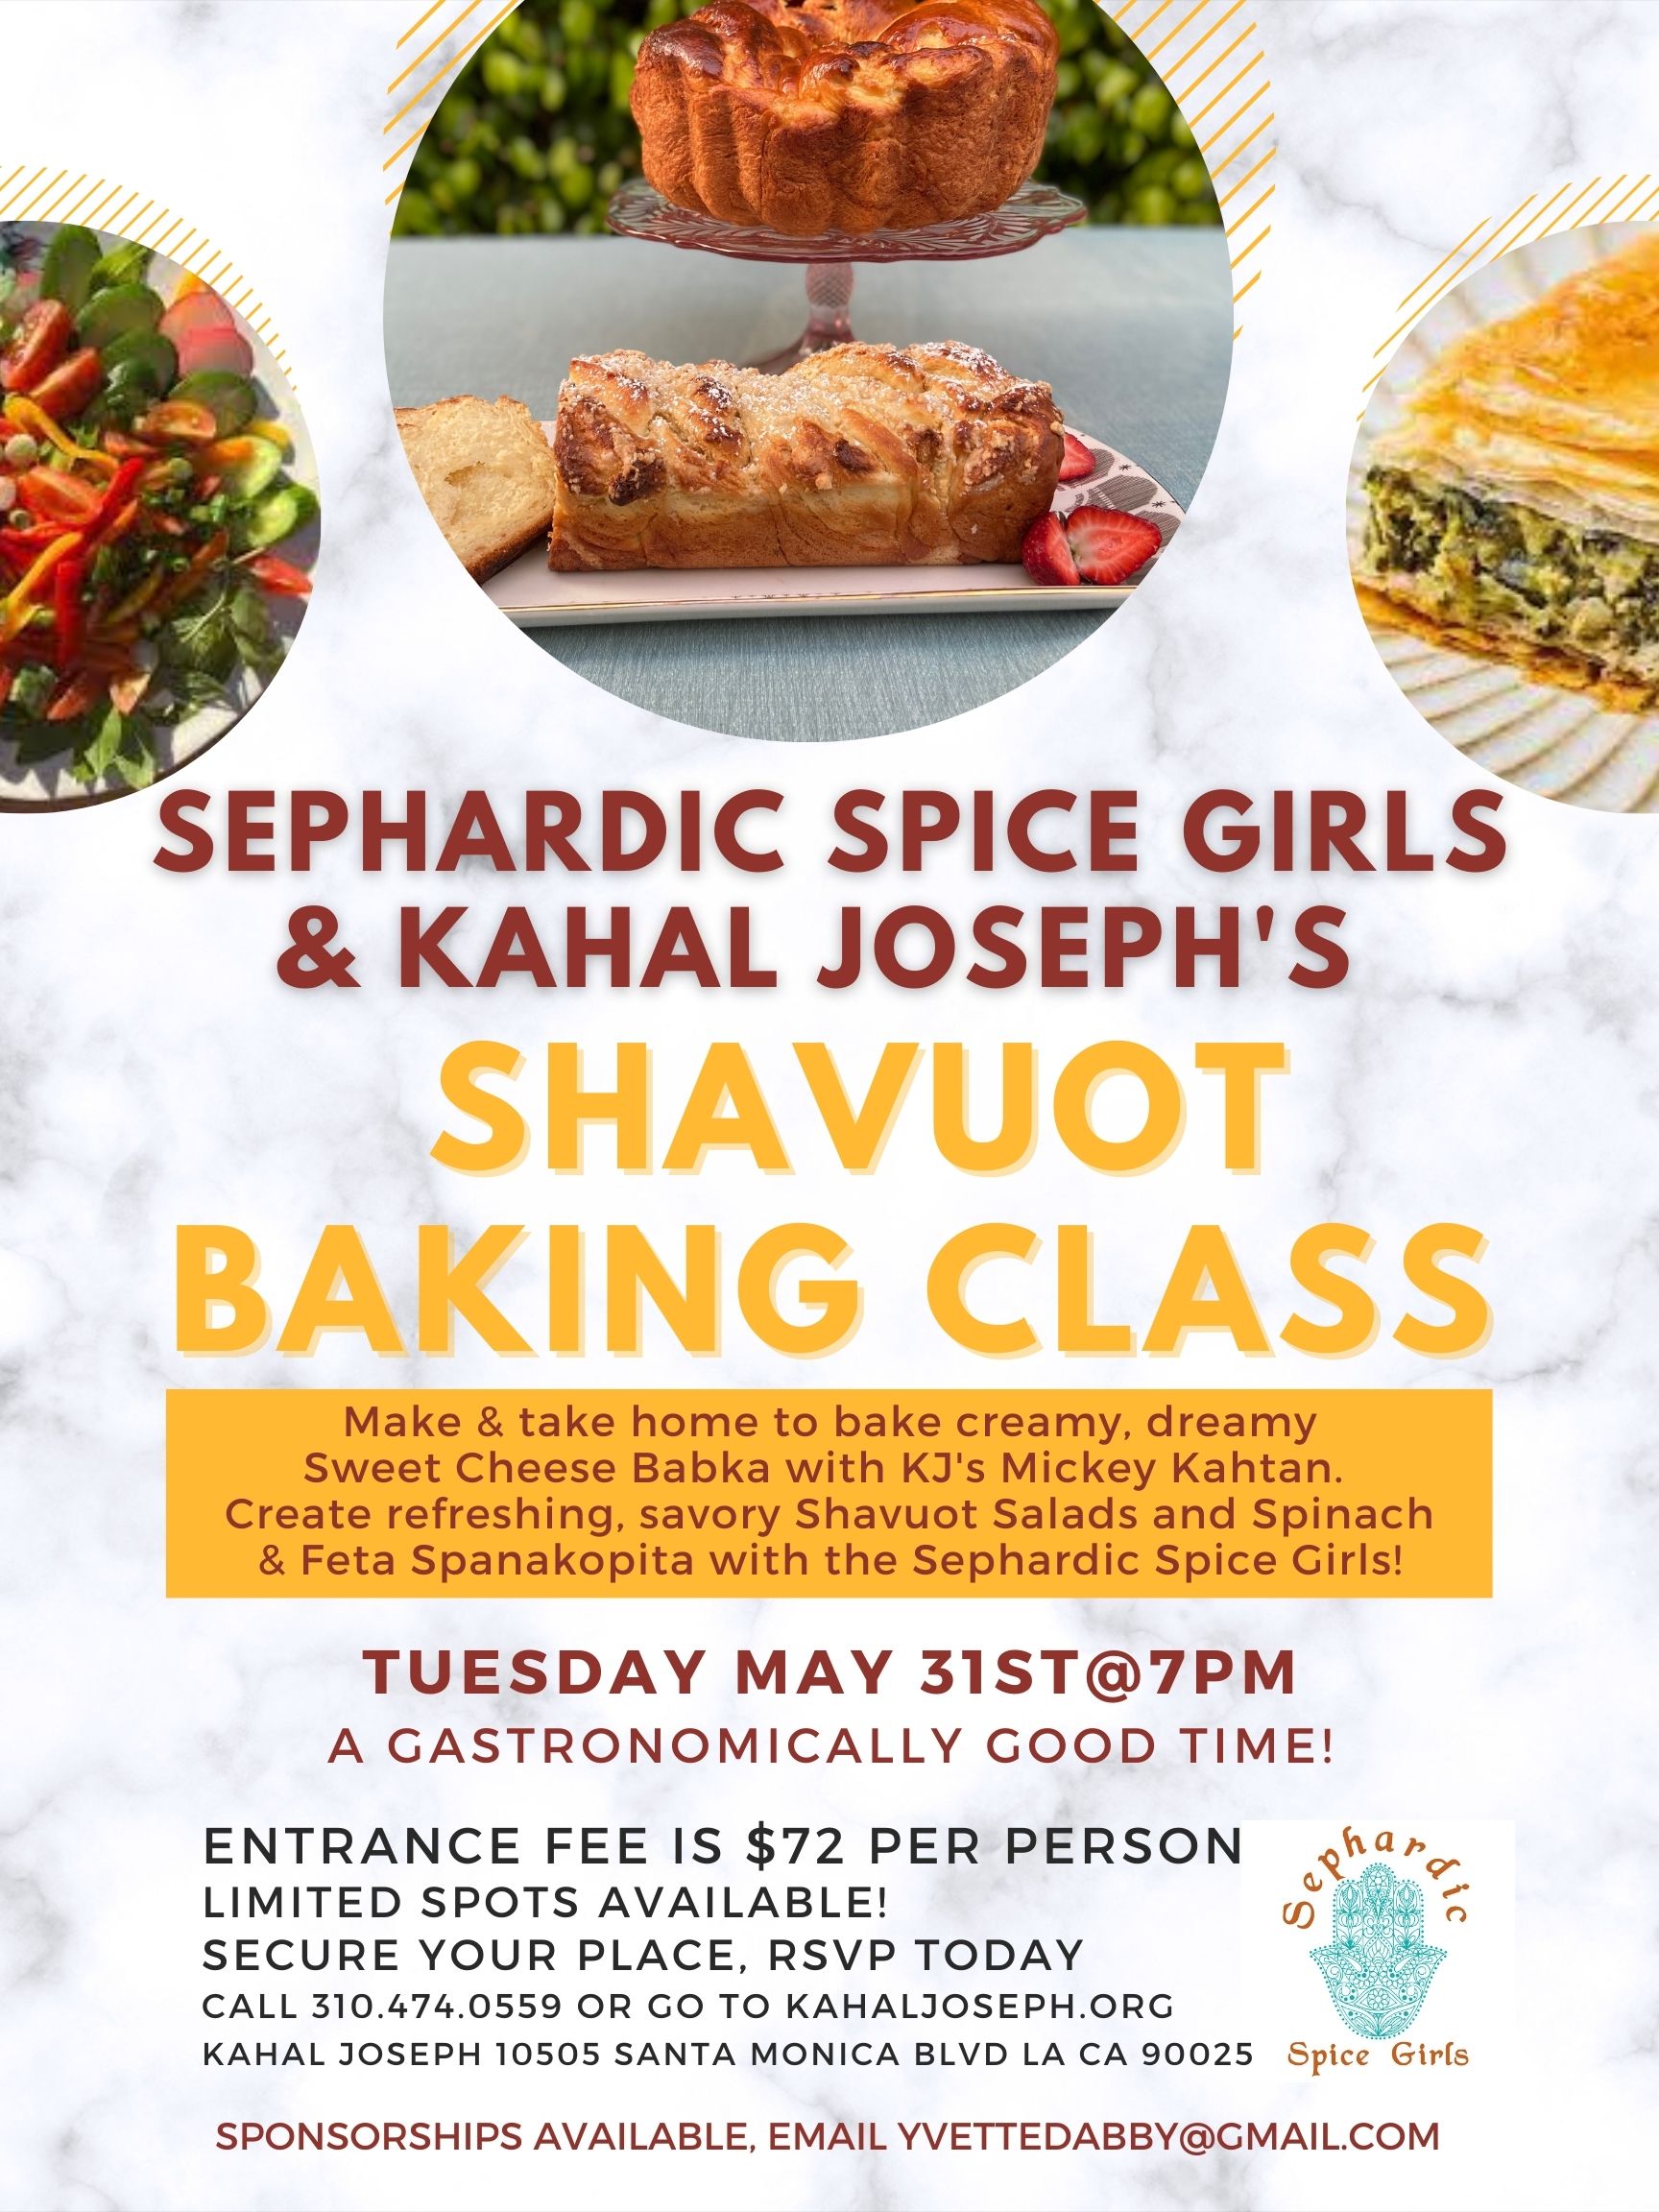 Shavuot Baking Class with Sephardic Spice Girls & KJ Master Chefs